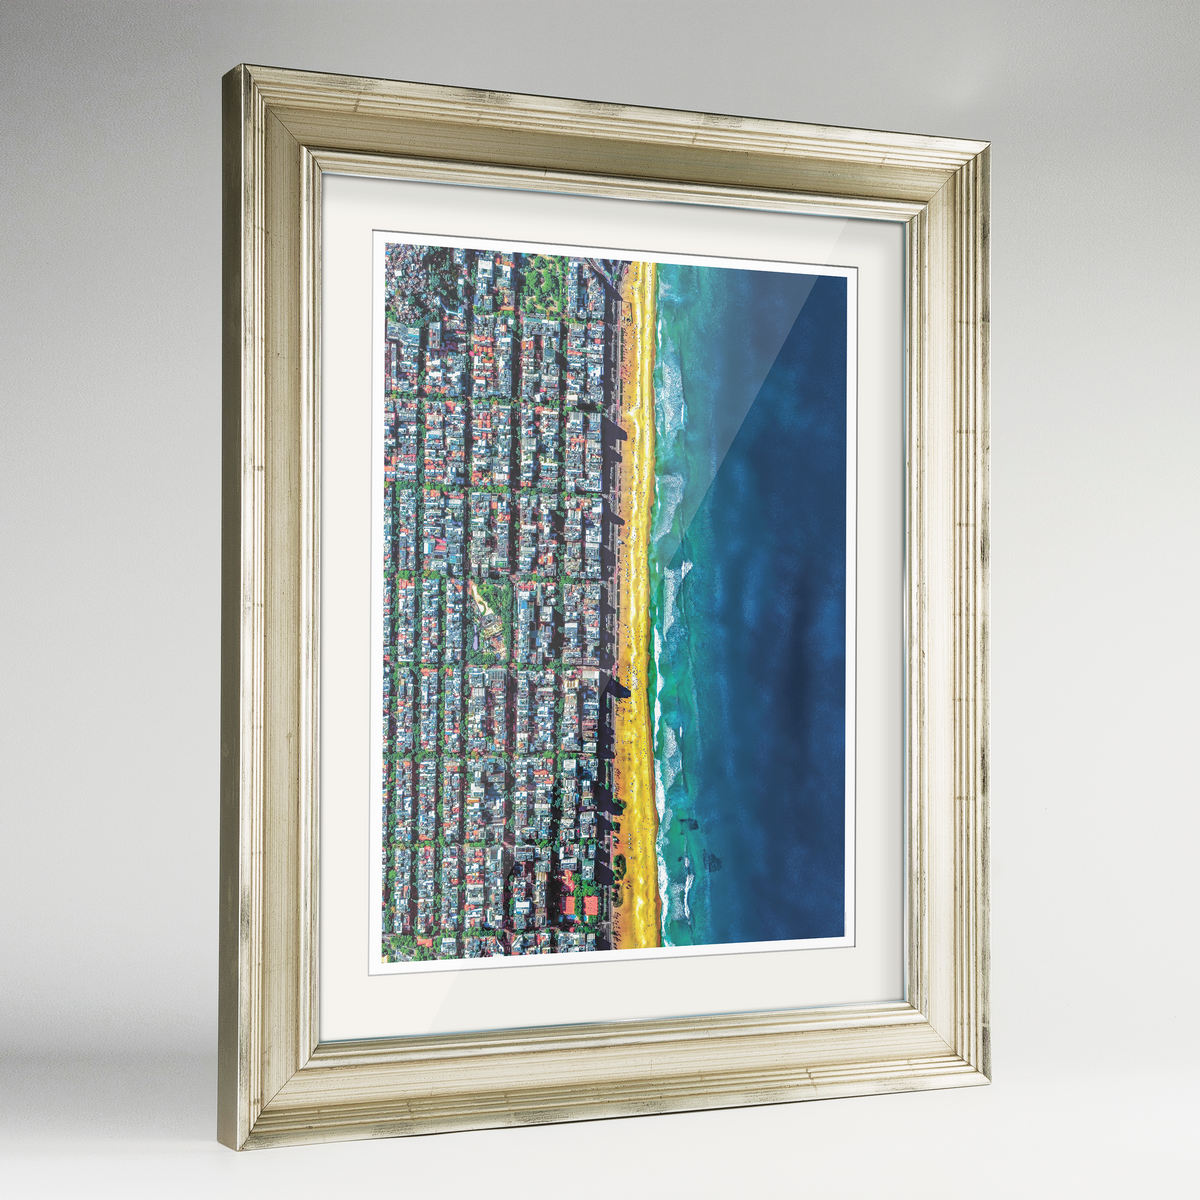 Ipanema Beach Earth Photography Art Print - Framed